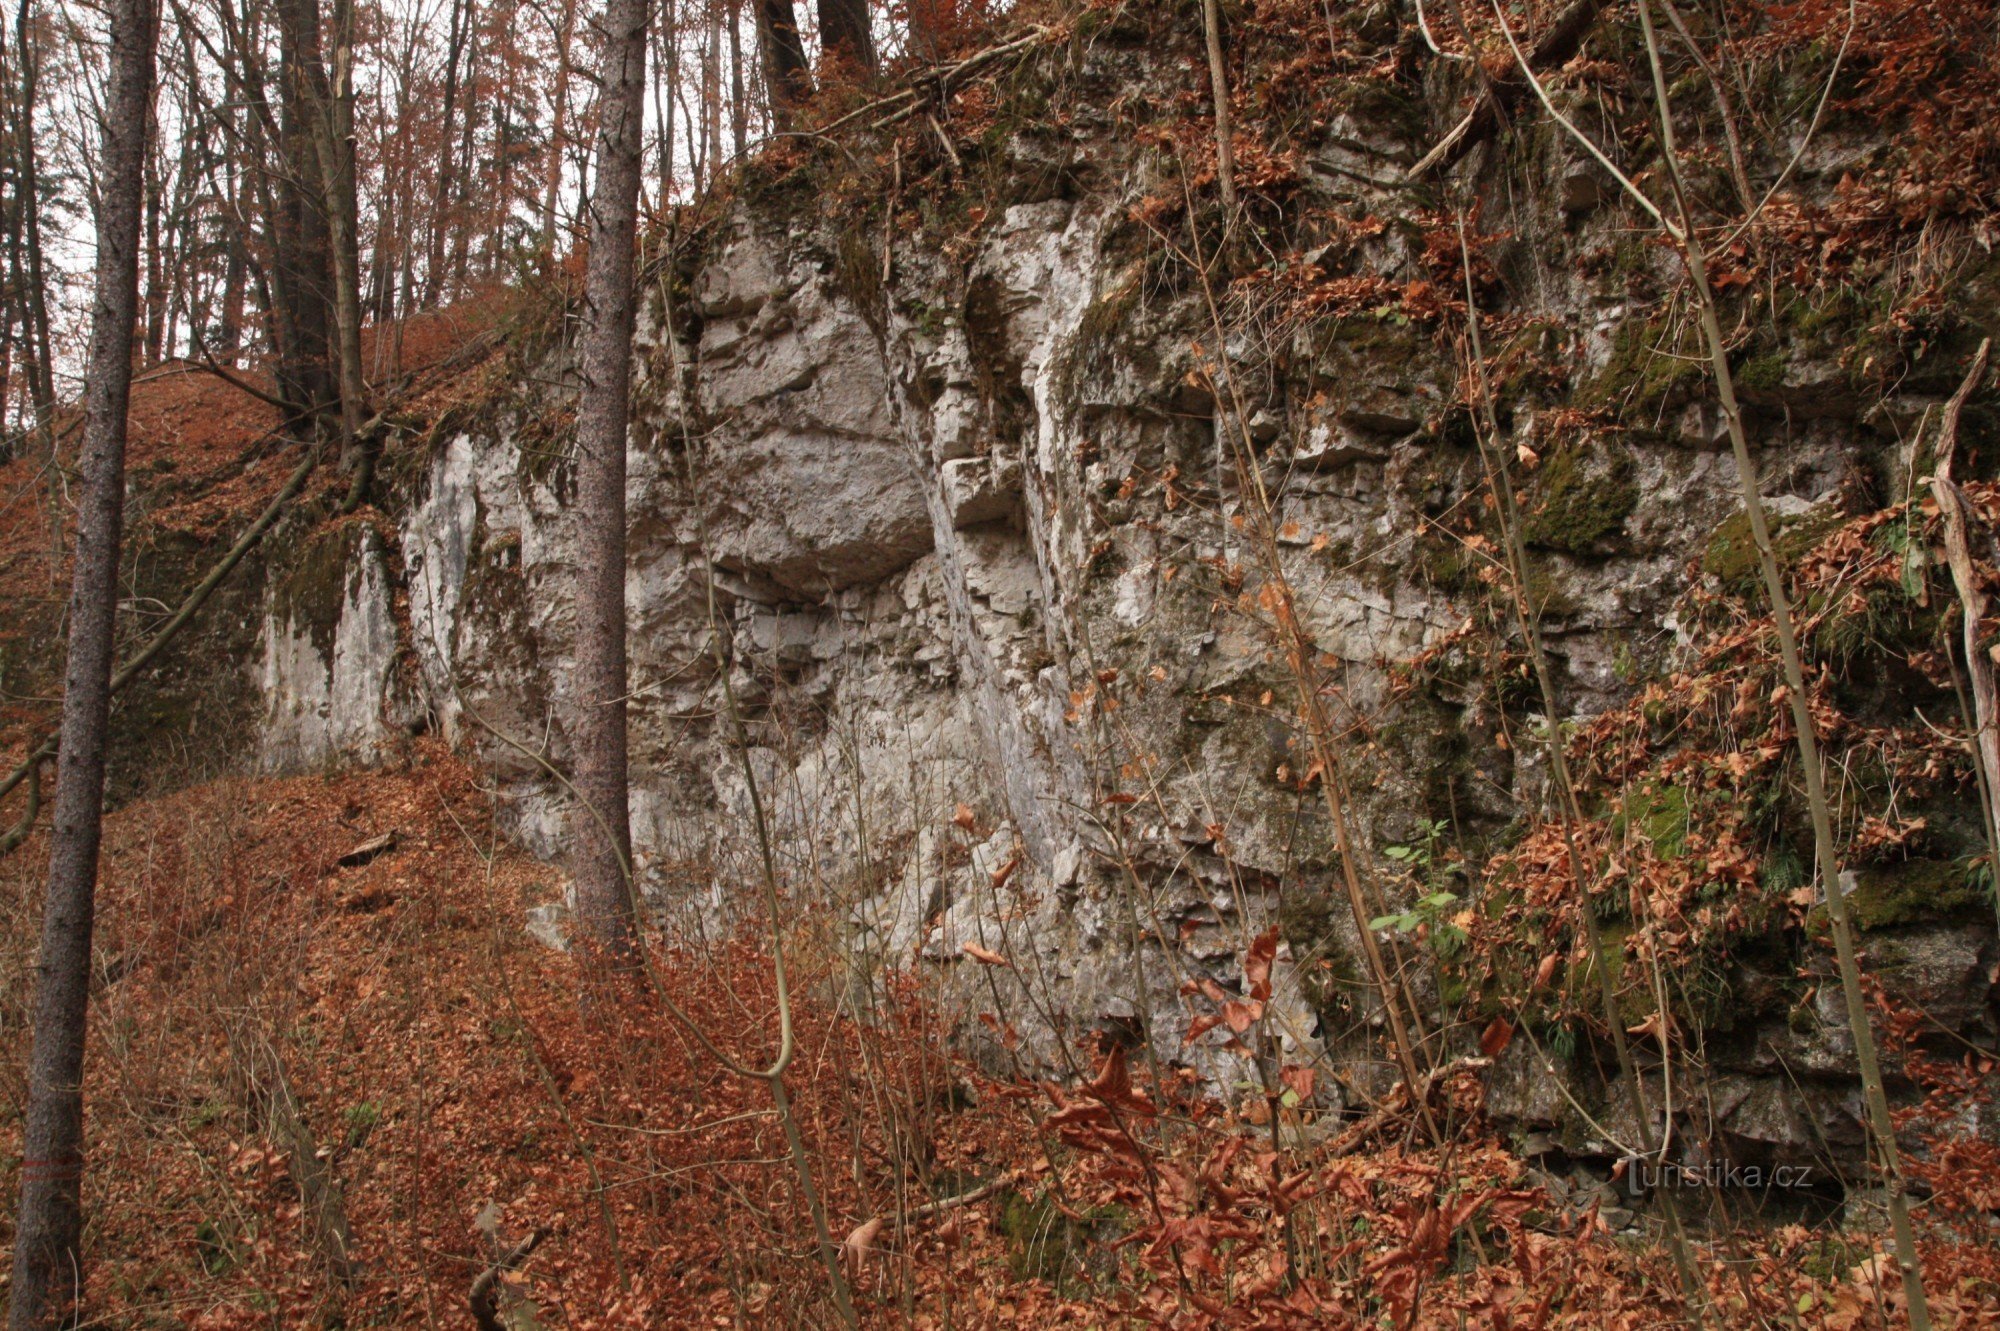 Đá ở Vaječník, ở phần trên của lối vào hang động ở Vaječník